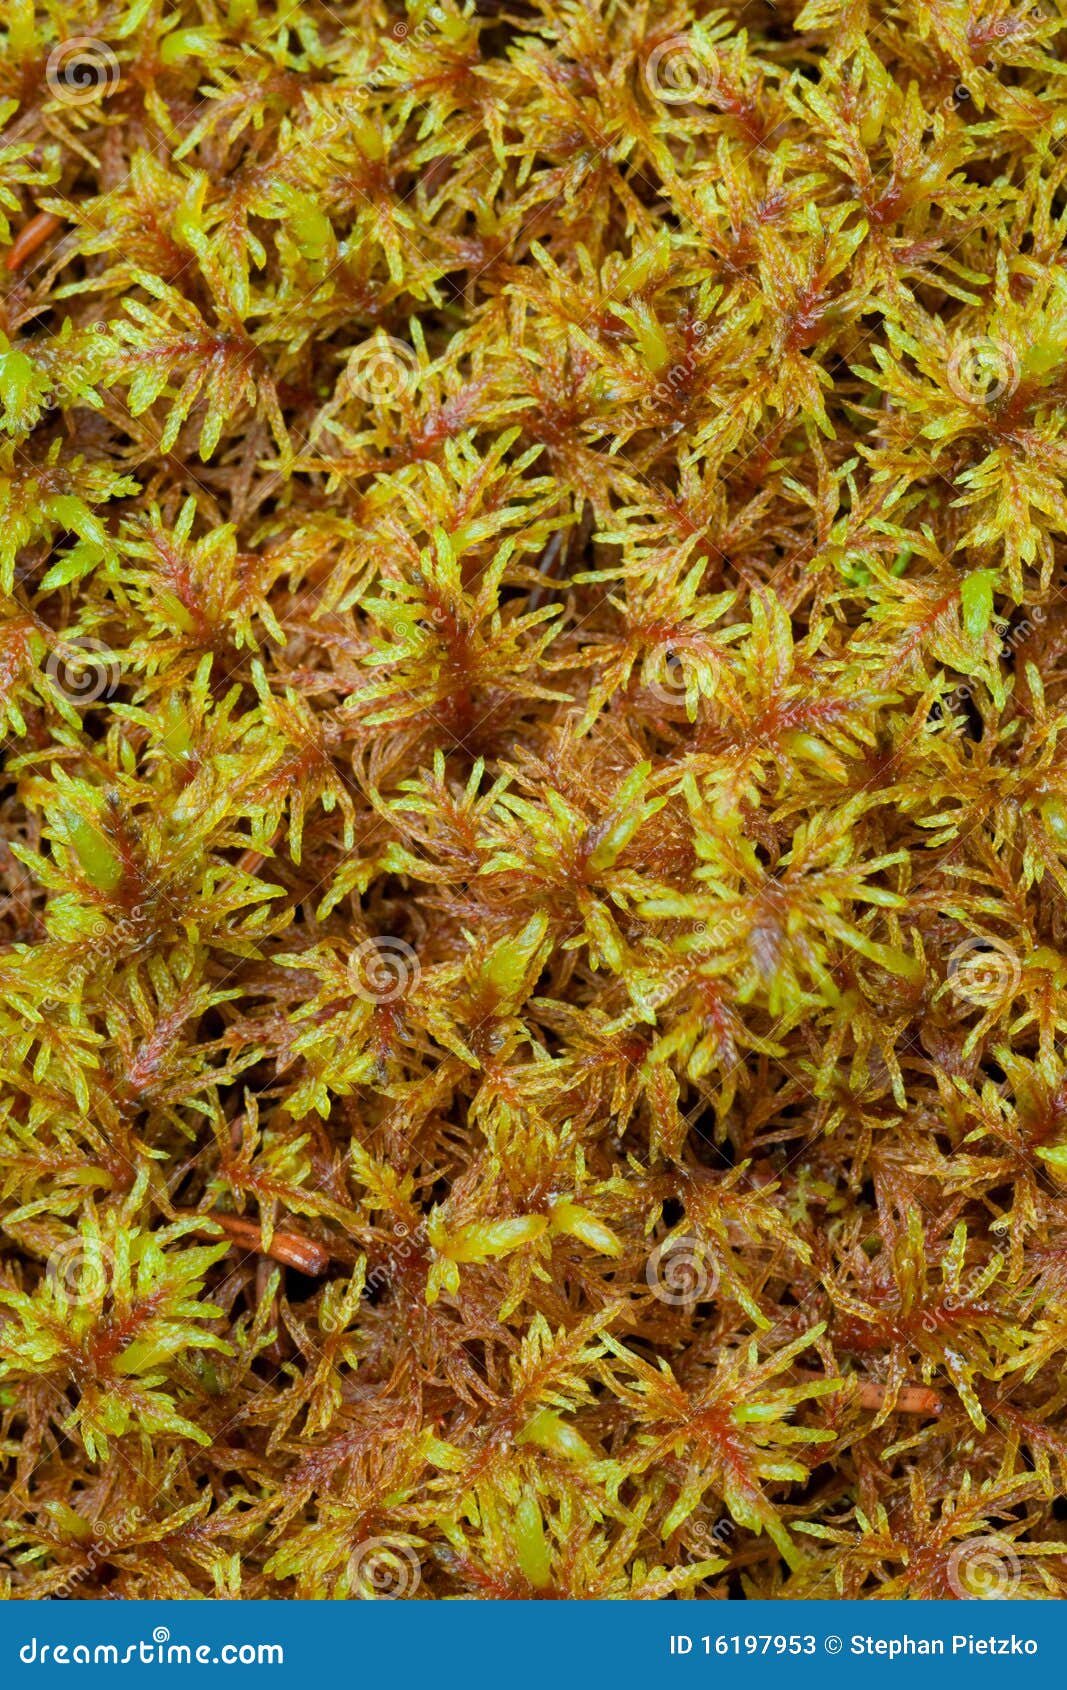 peat moss (sphagnum)